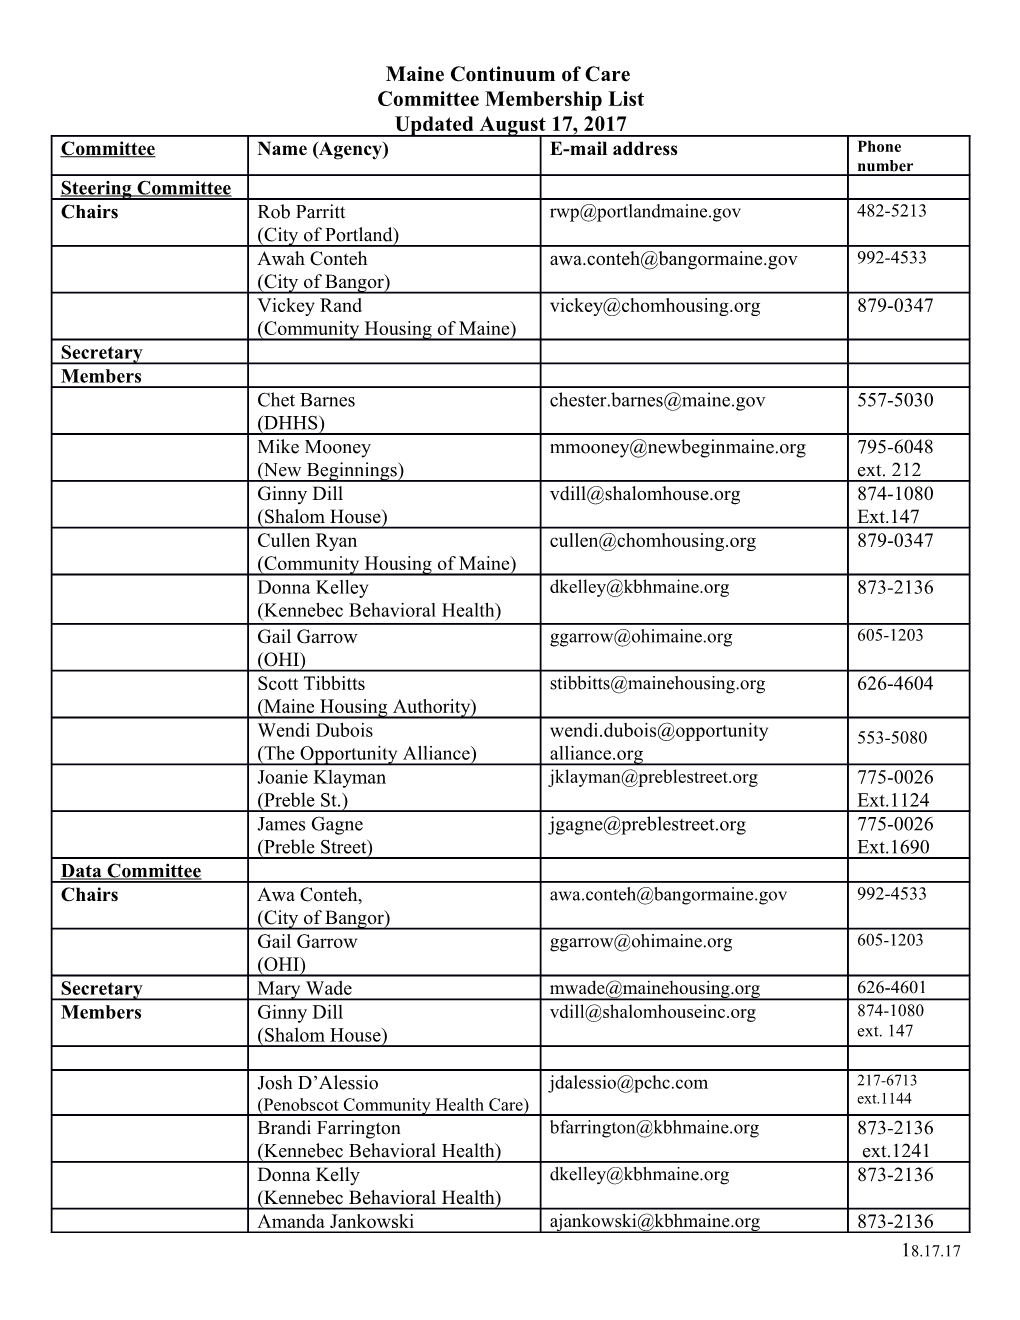 Committee Membership List